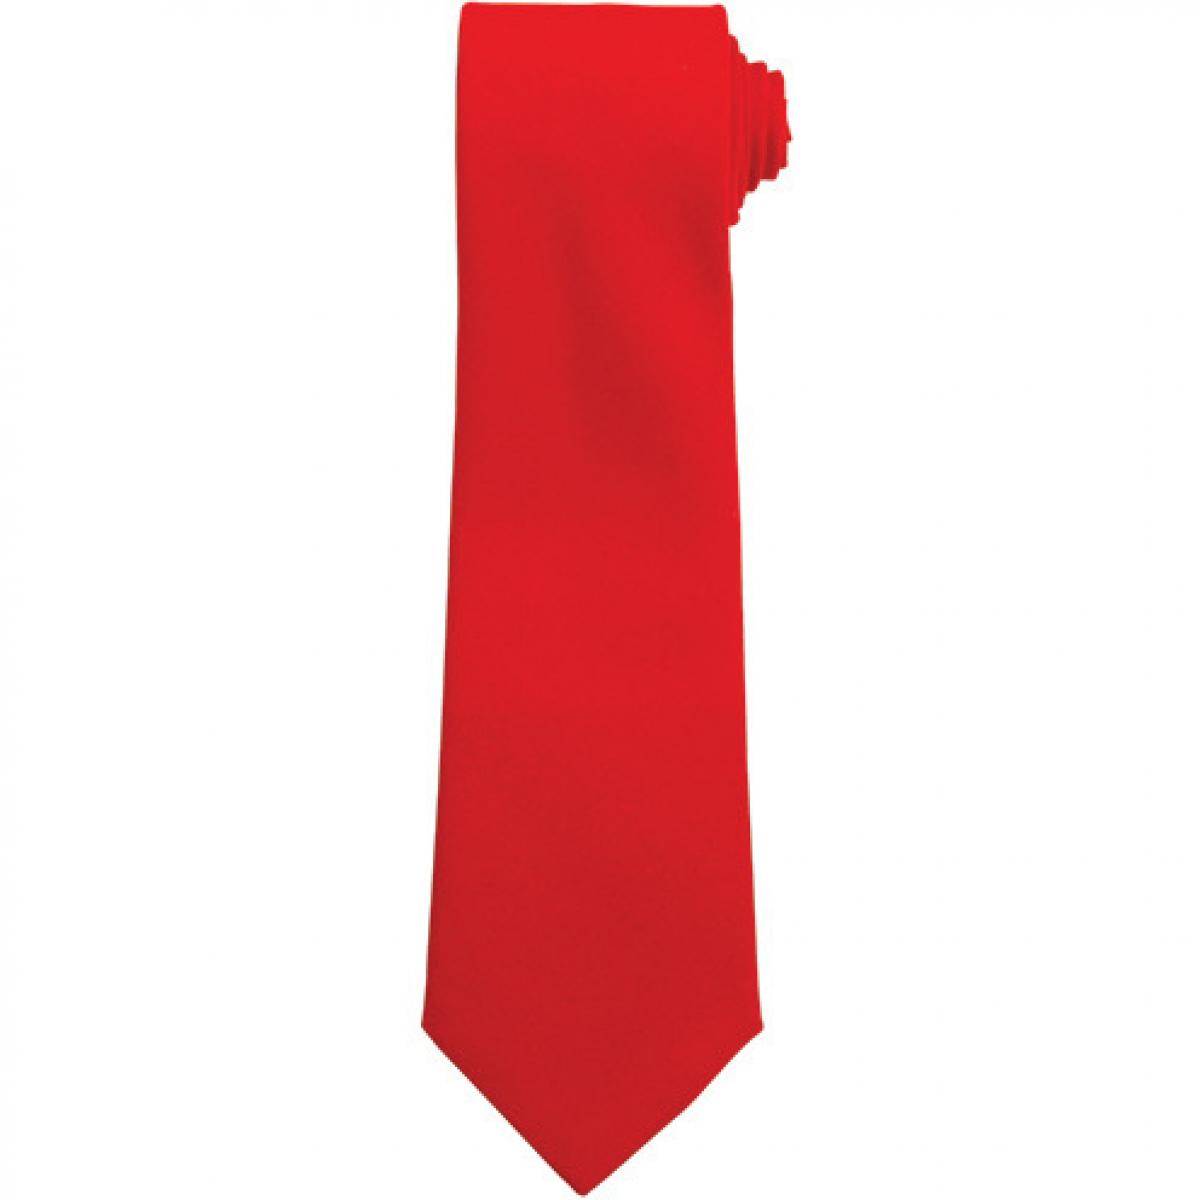 Hersteller: Premier Workwear Herstellernummer: PR700 Artikelbezeichnung: Work Tie Farbe: Red (ca. Pantone 200)